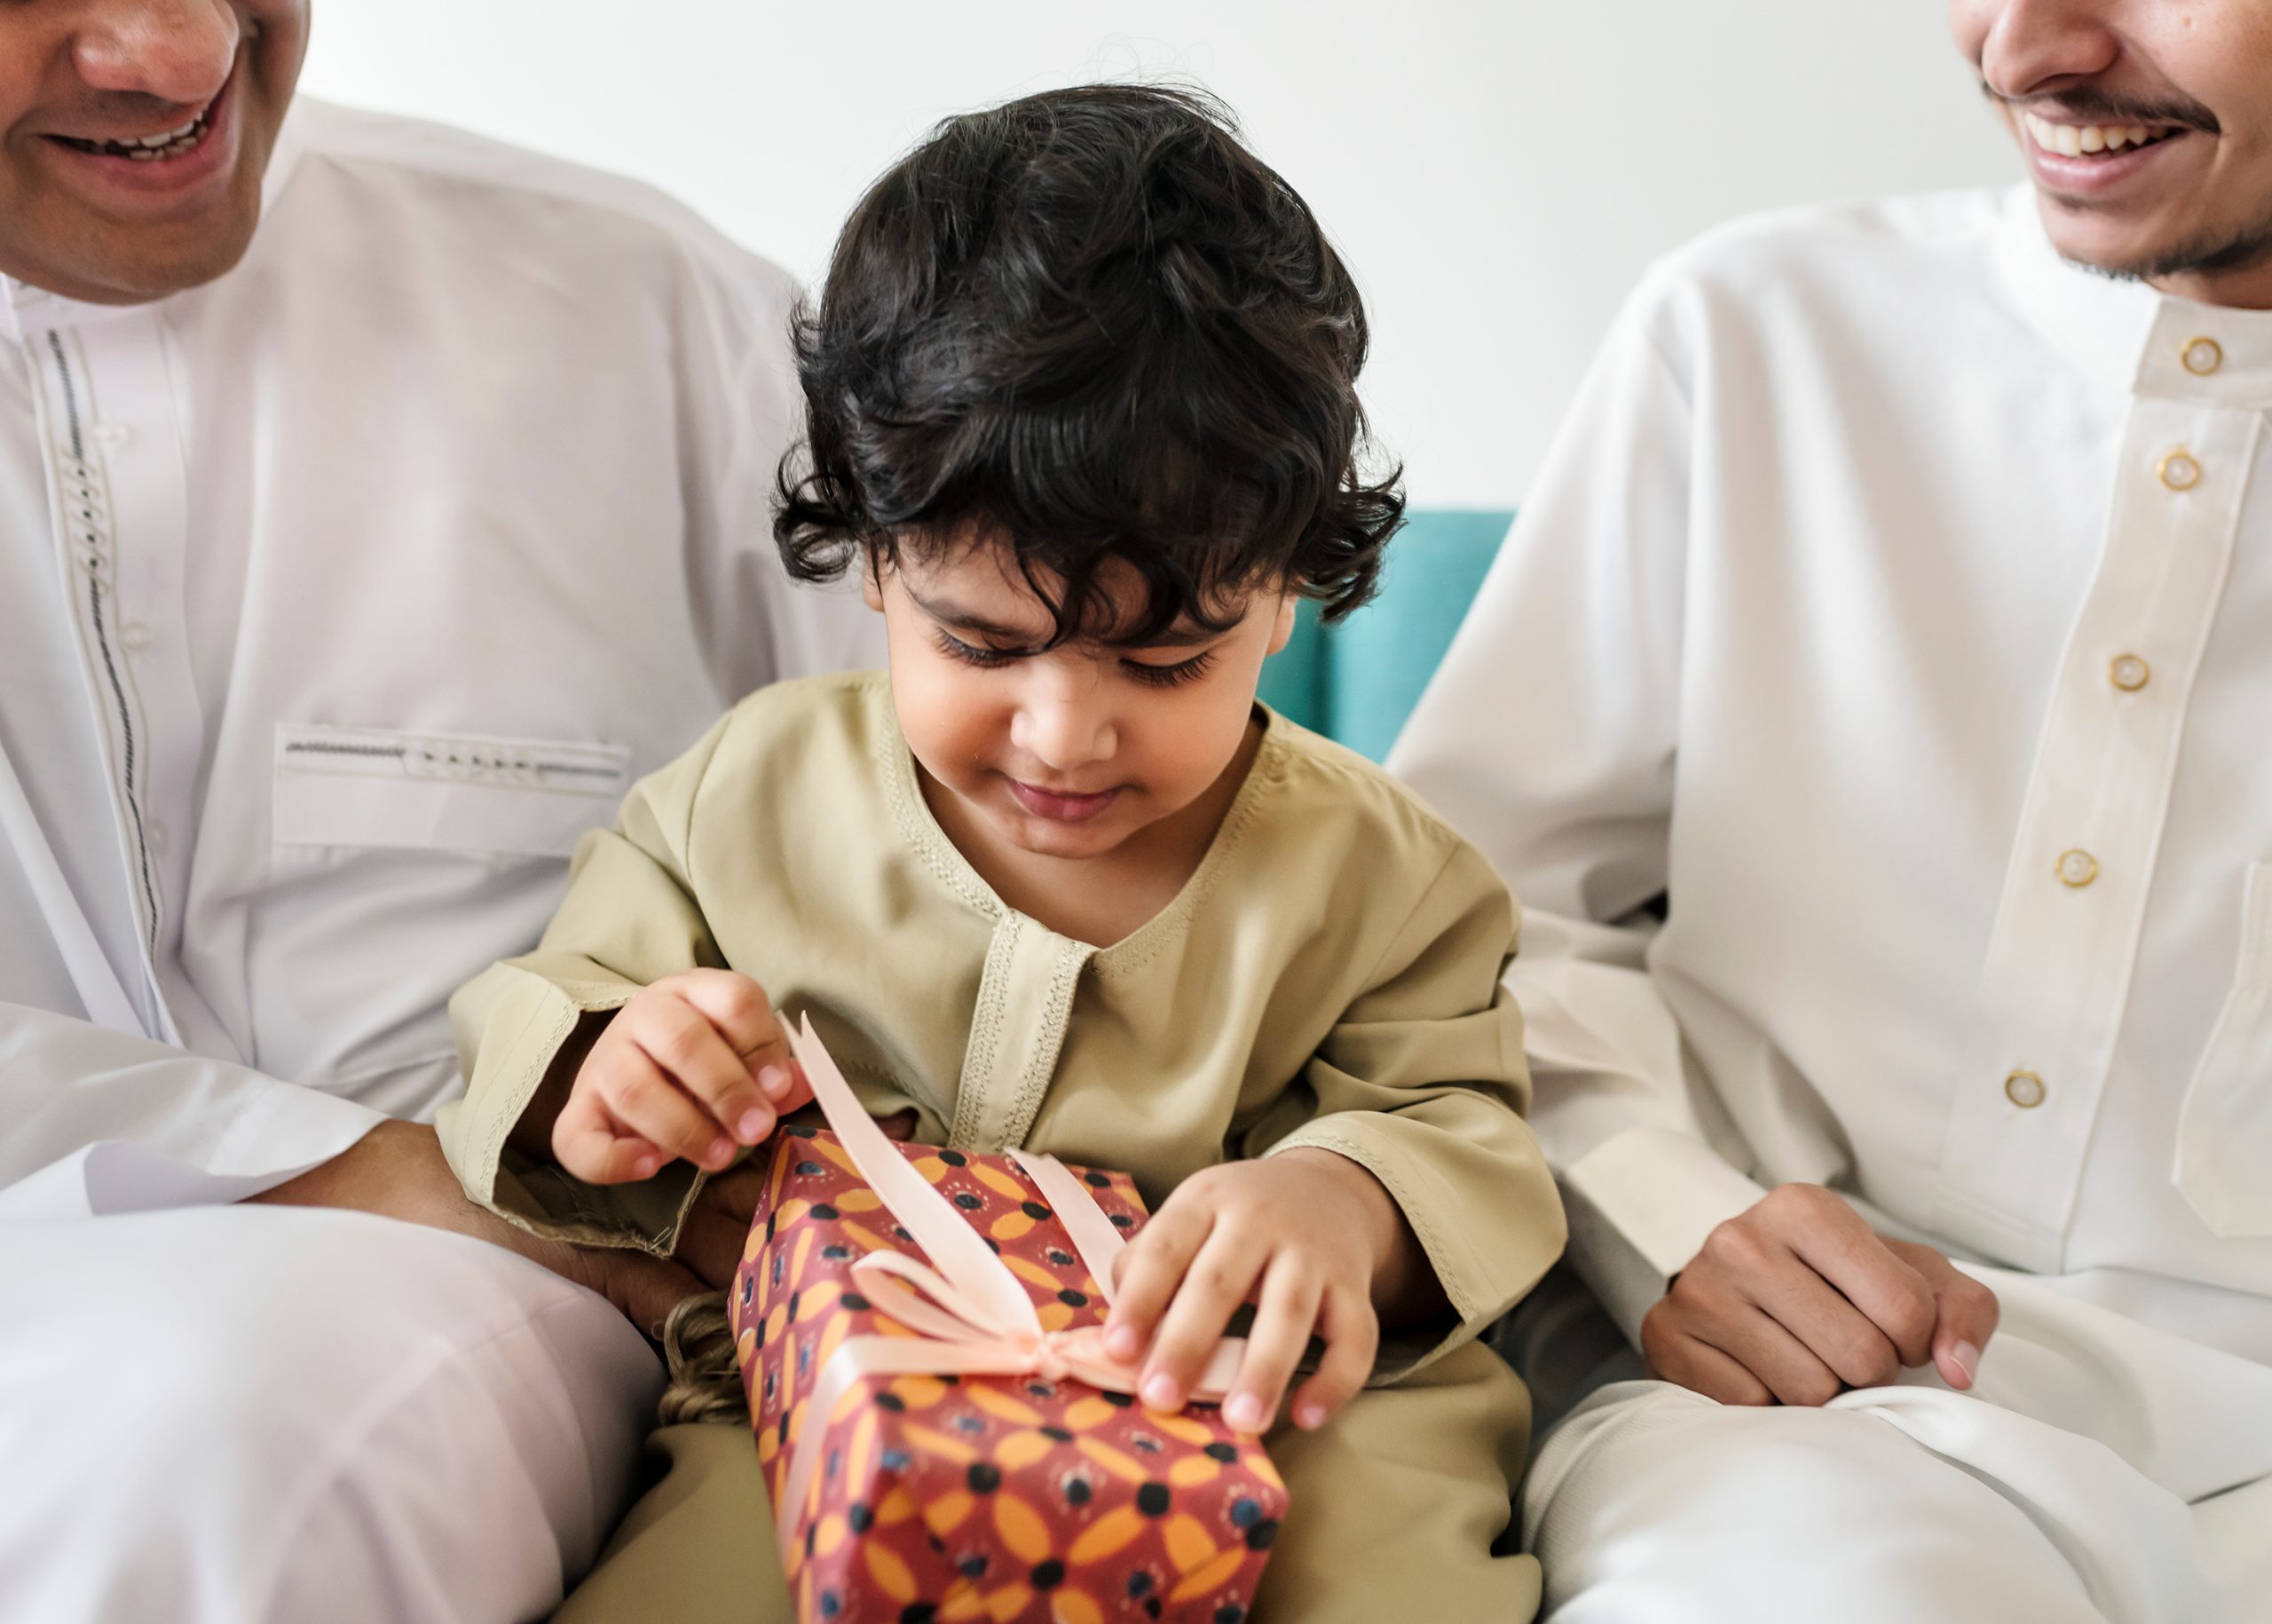 En liten gutt sitter i mellom to menn på en sofa og åpner en gave. Gaven er pakket inn i med beige sinkesløyfe og orange papir.